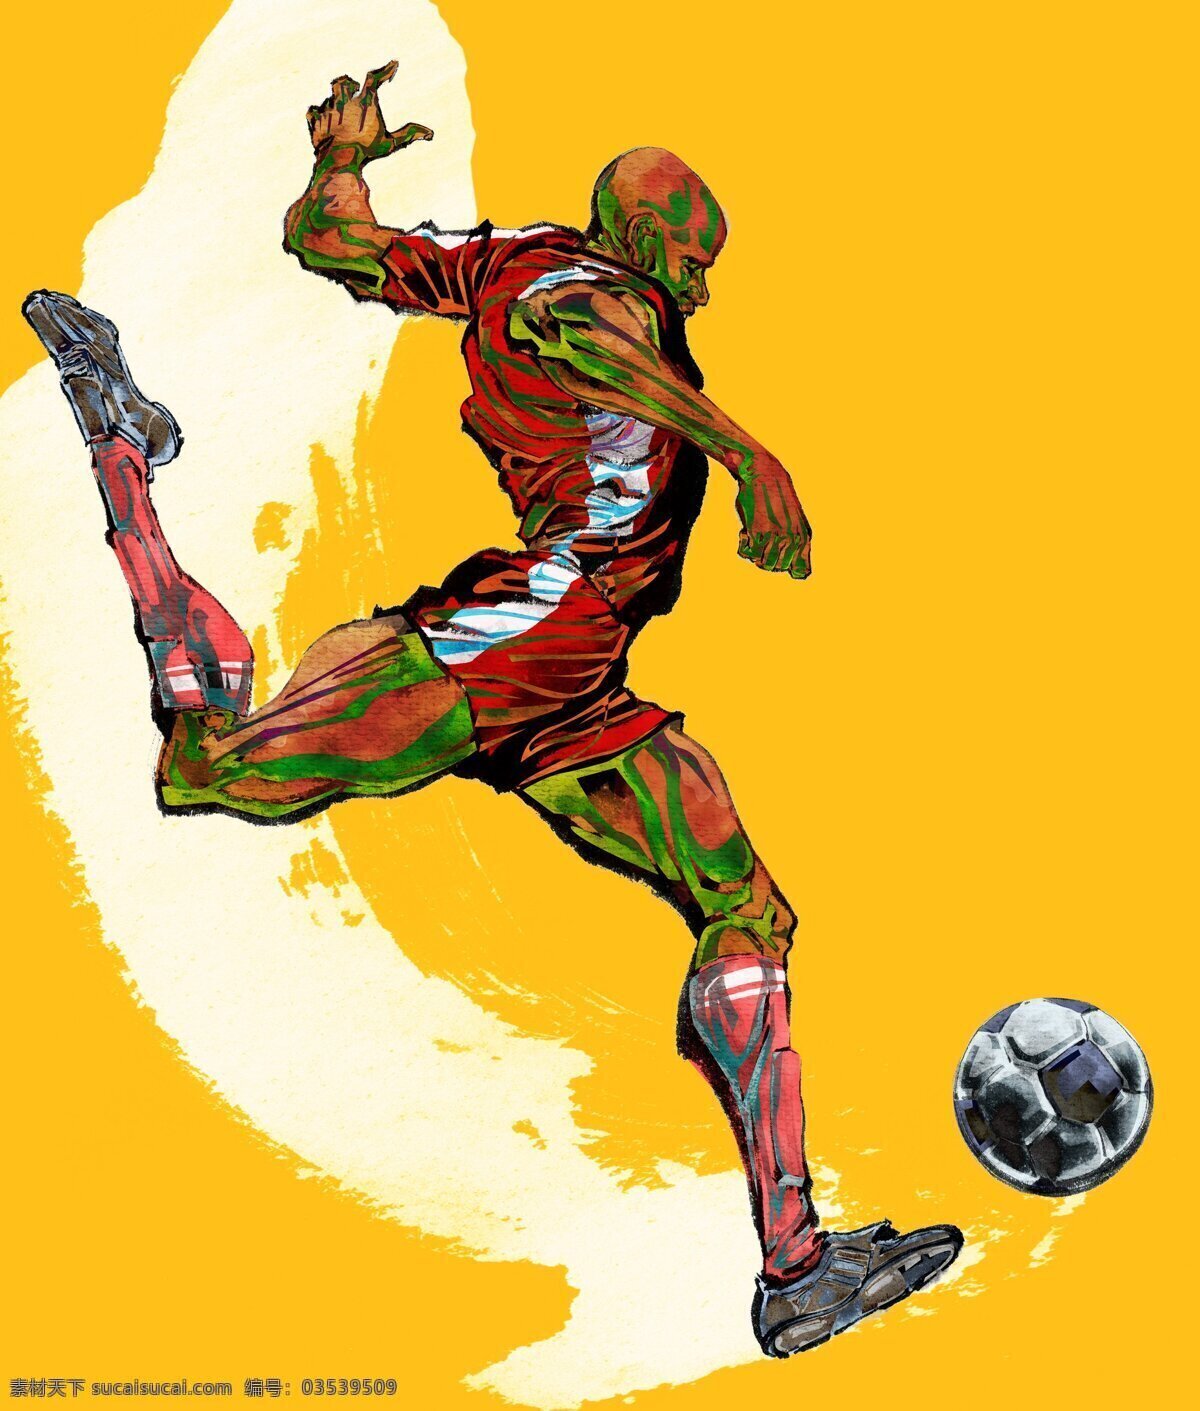 巴西 世界杯 人物 插 画集 2014 巴西世界杯 人物插画 足球